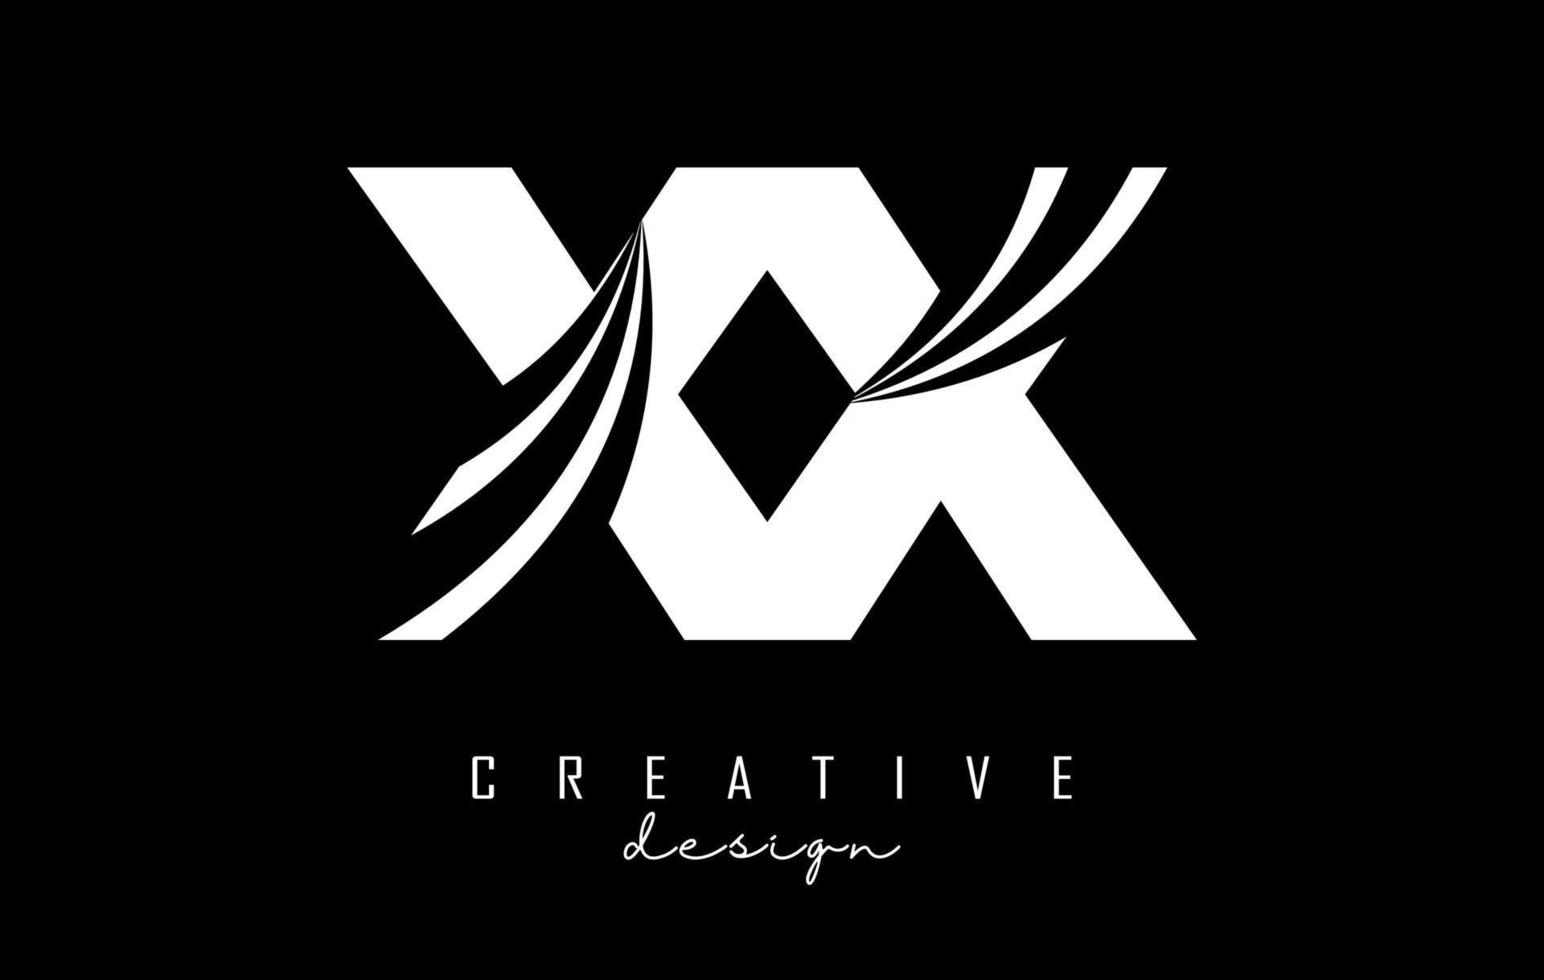 kreative weiße buchstaben xx x logo mit führenden linien und straßenkonzeptdesign. Buchstaben mit geometrischem Design. vektor